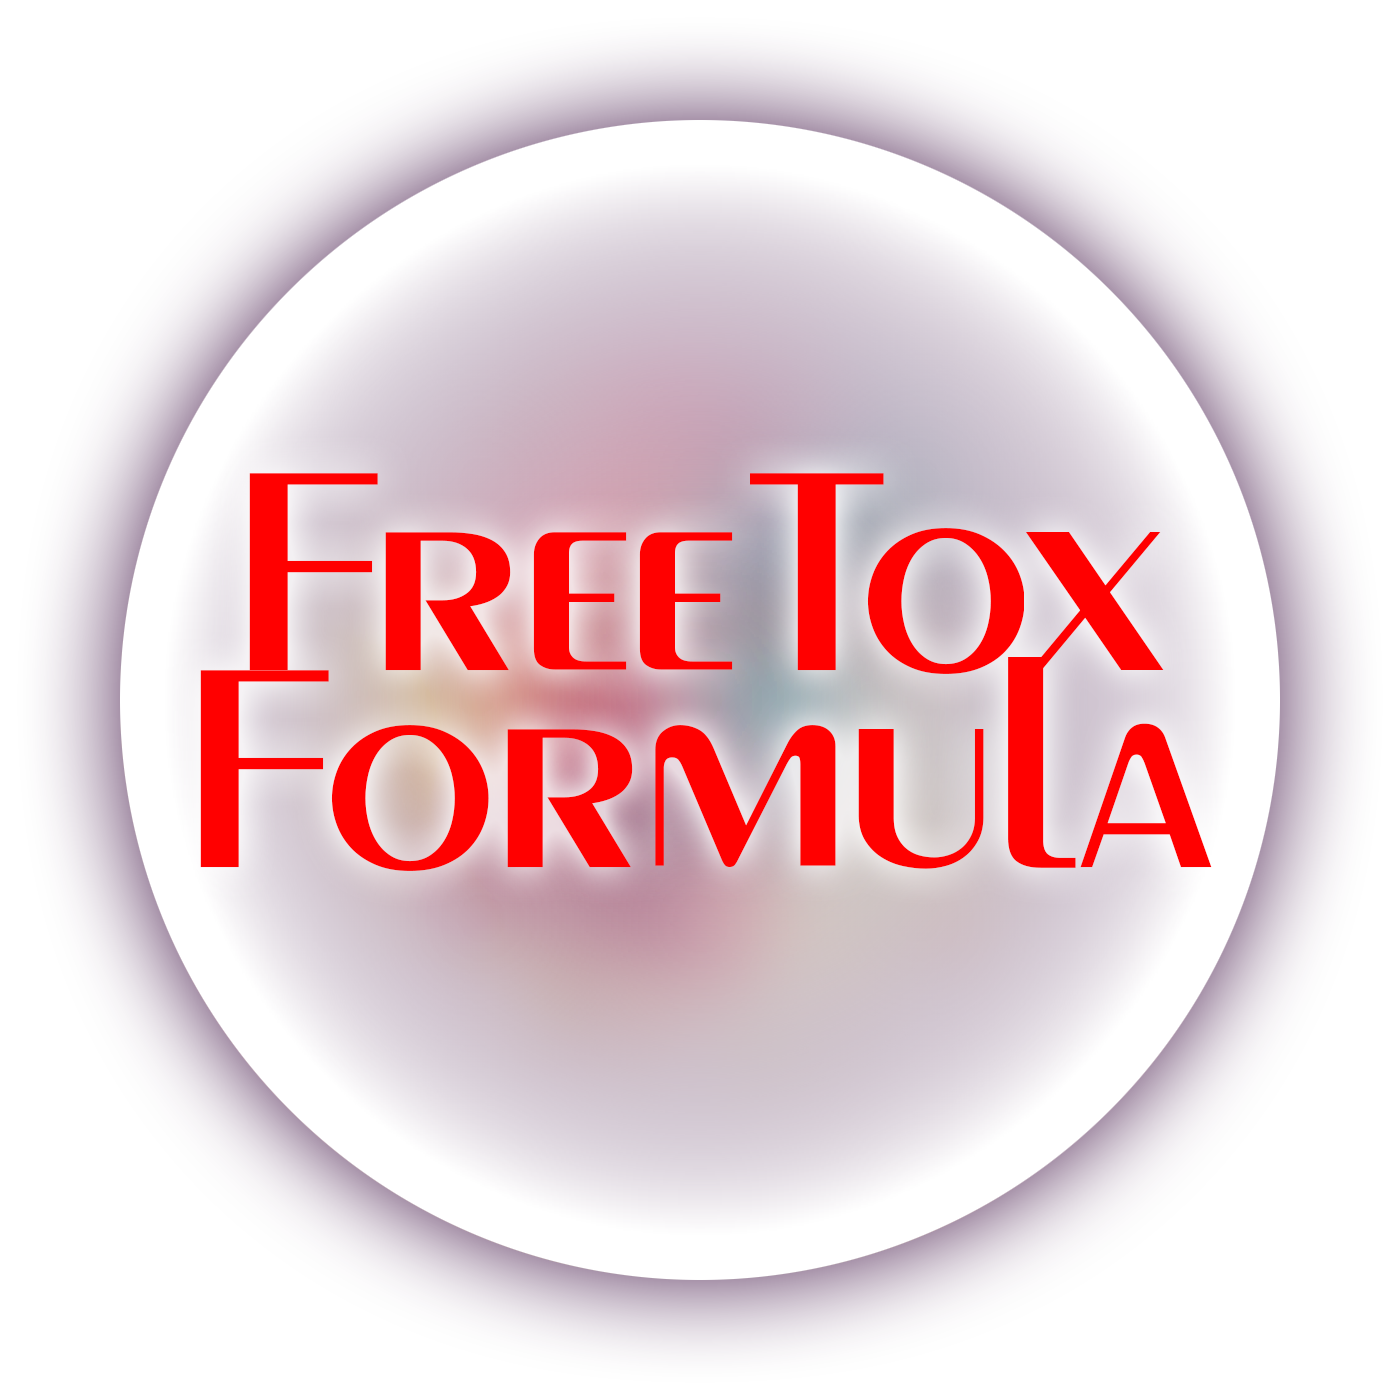 Freetox Formula